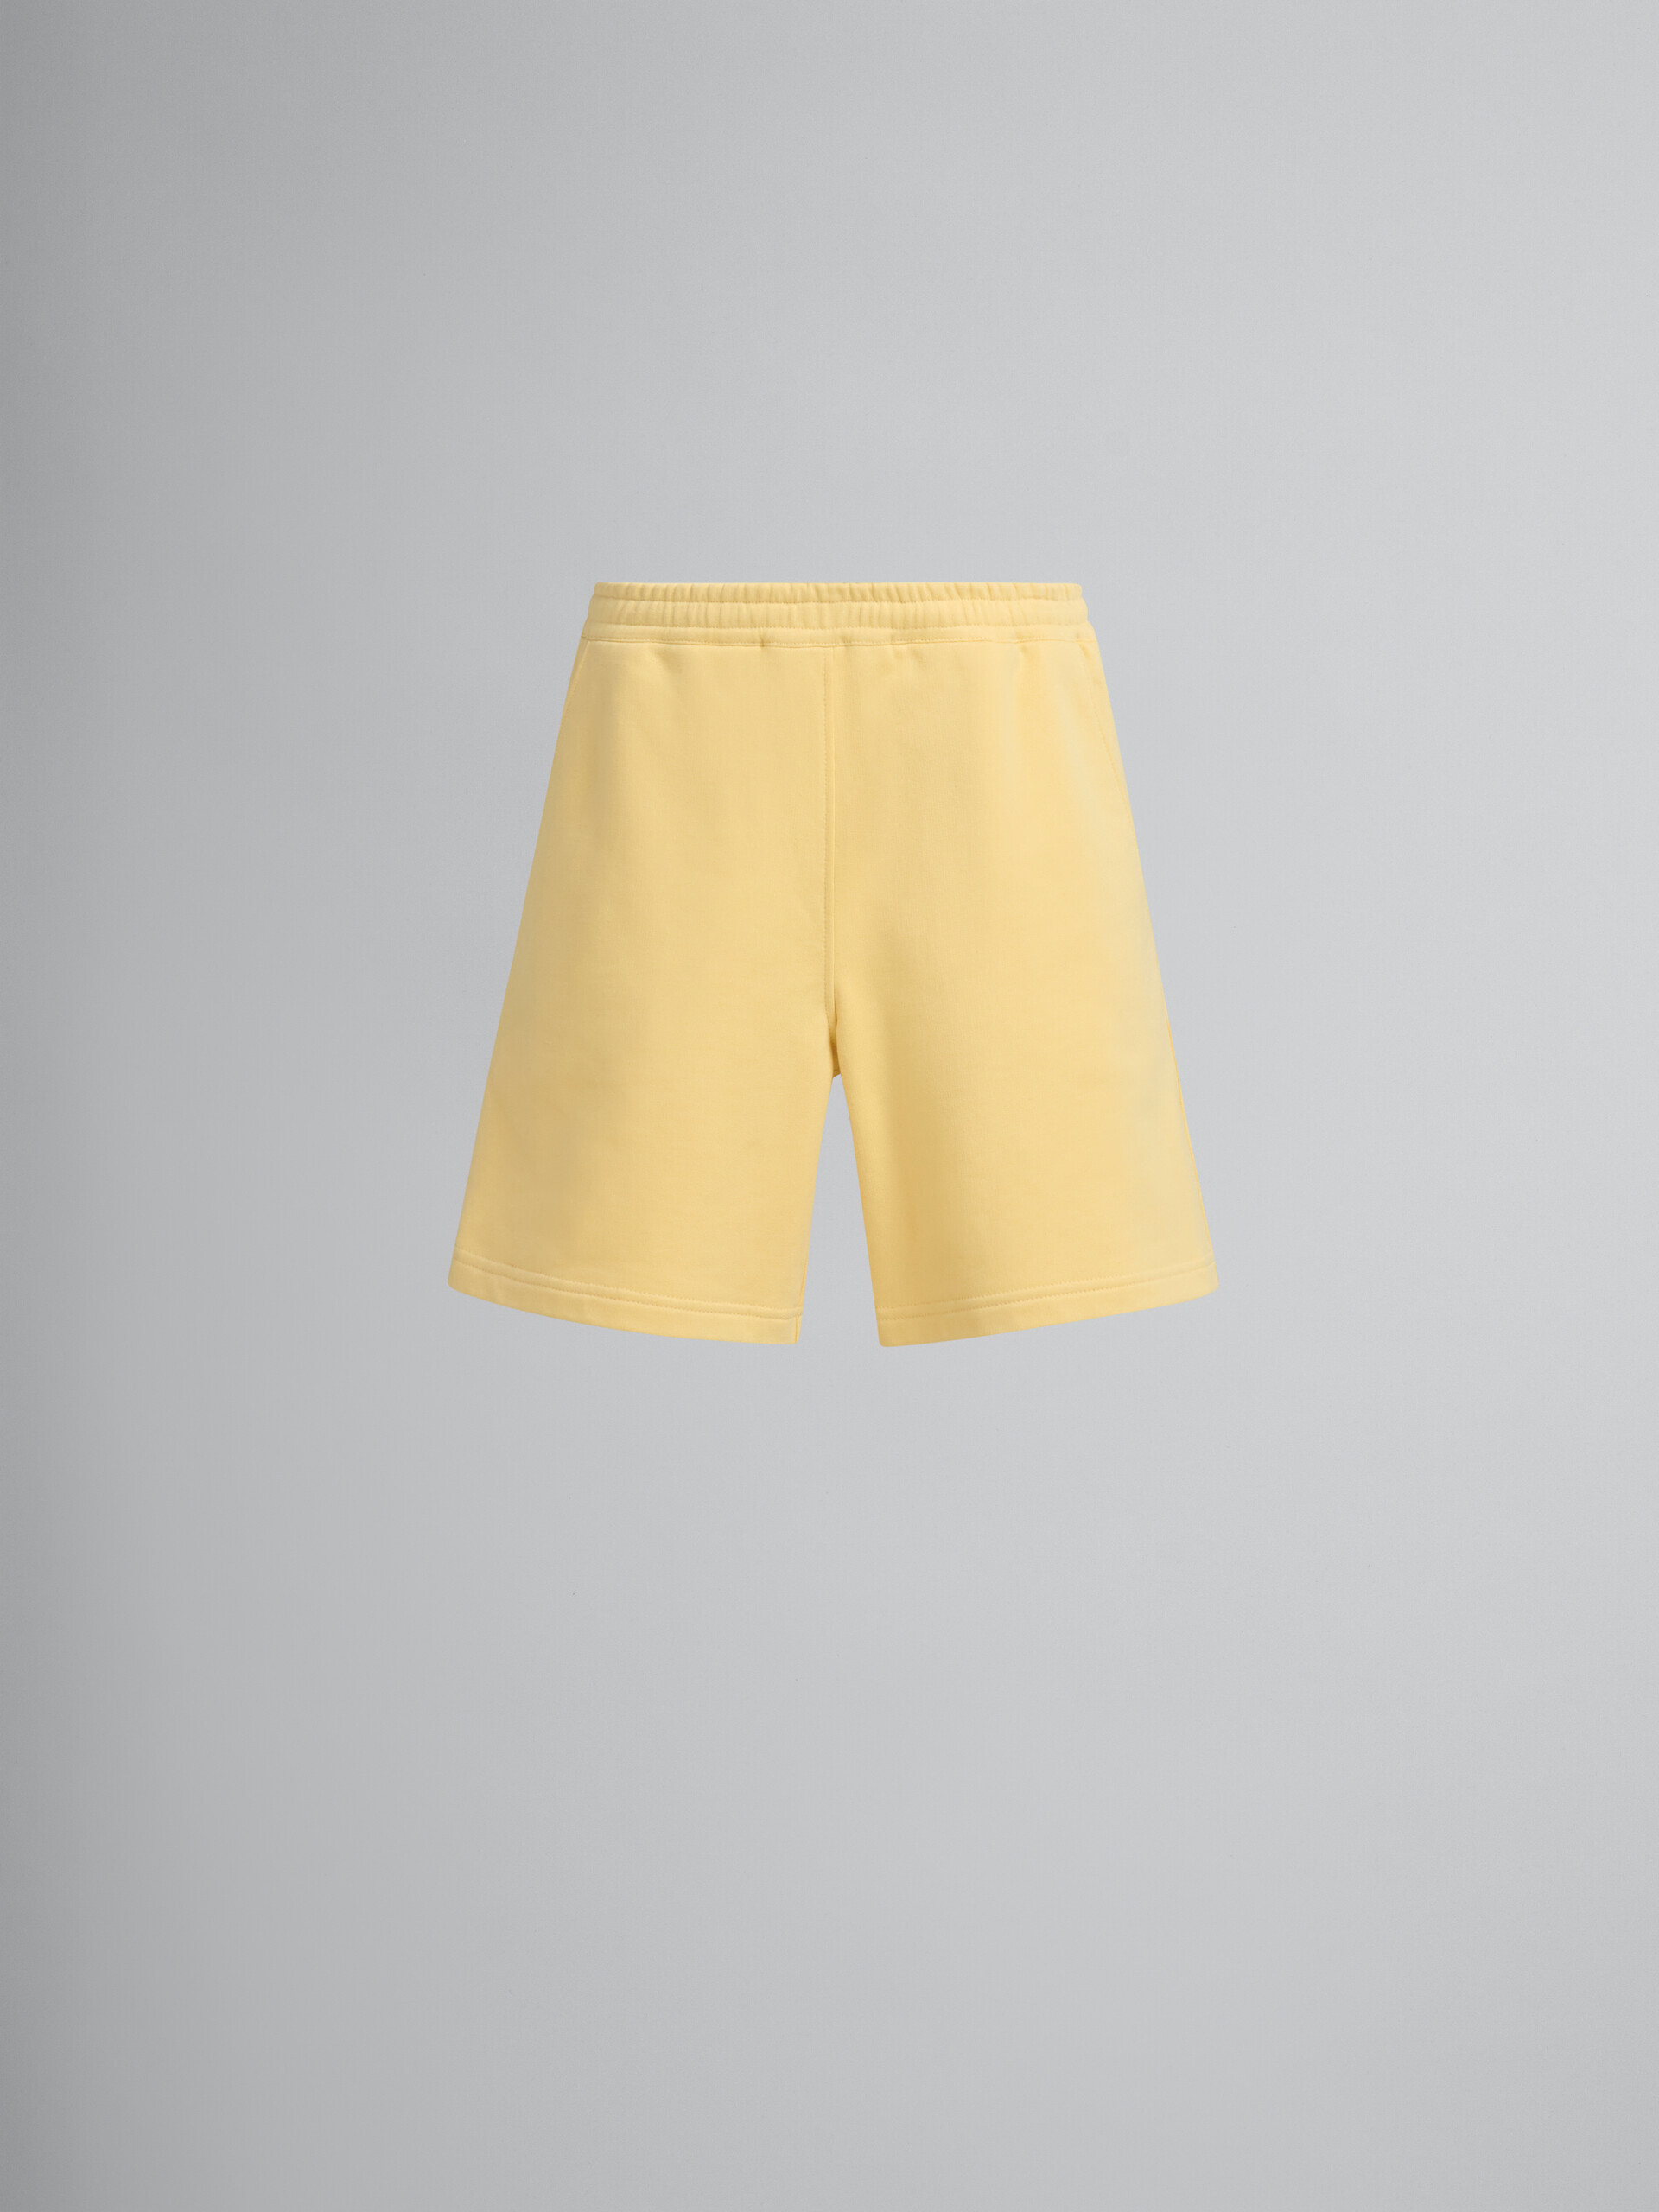 Yellow organic jersey sweat shorts with Marni mending - Pants - Image 2